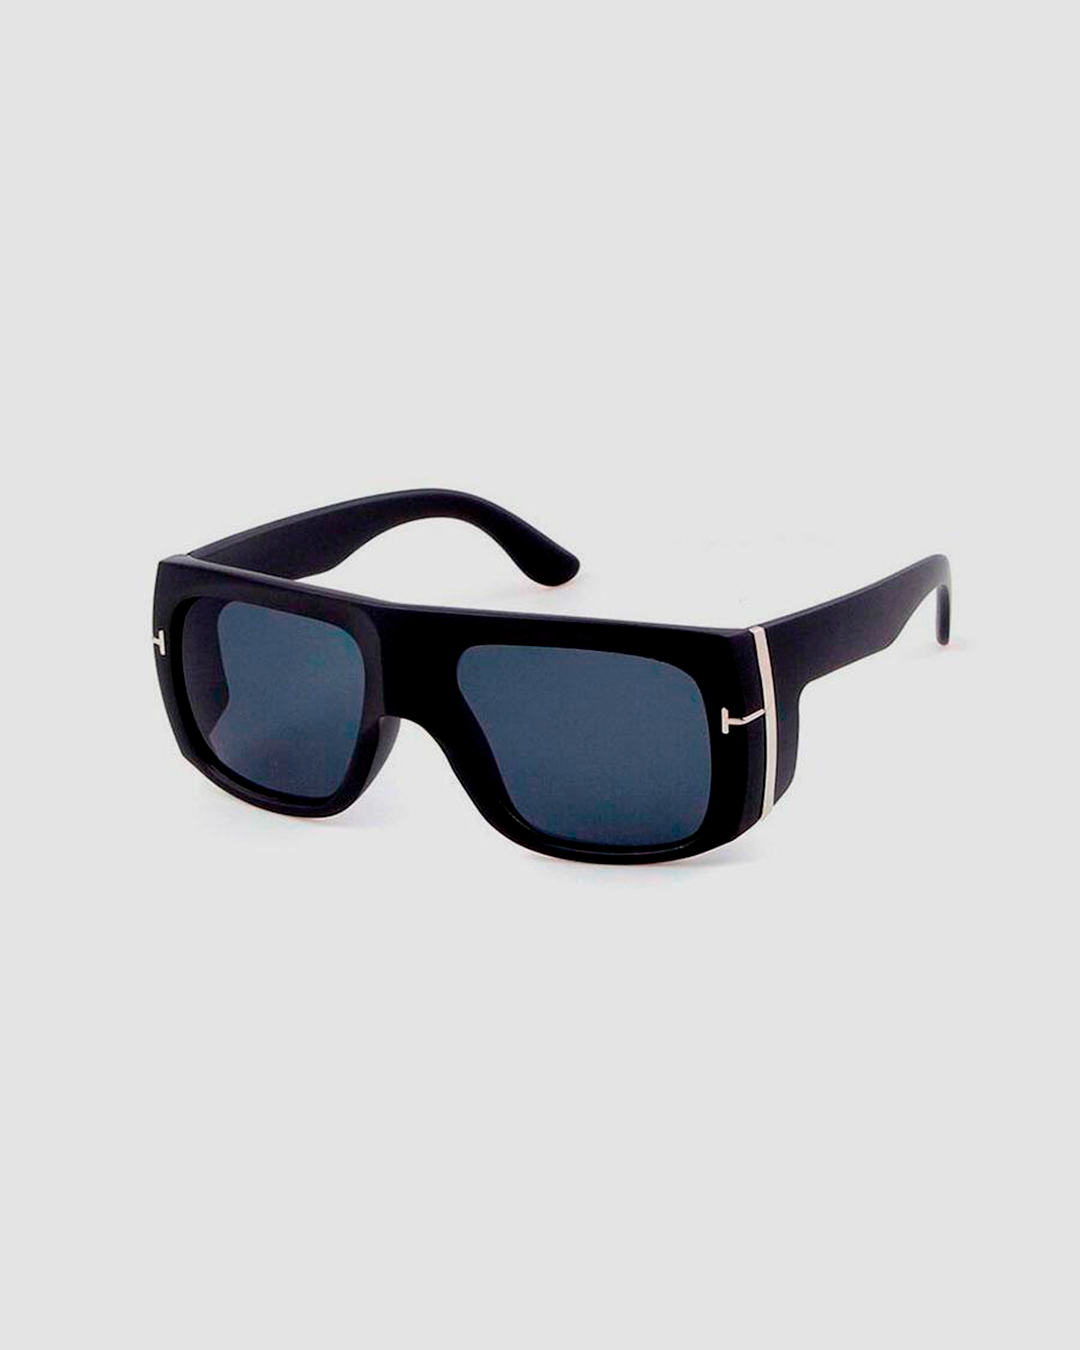 Wheatley Sunglasses